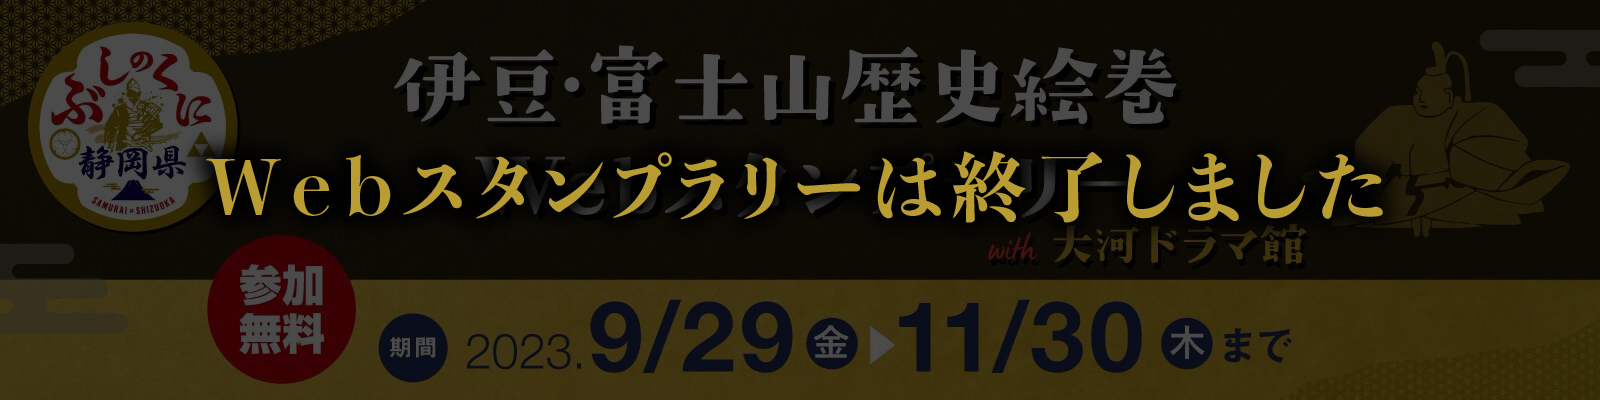 伊豆・富士山歴史絵巻Webスタンプラリーwith大河ドラマ館 9/29から開催！